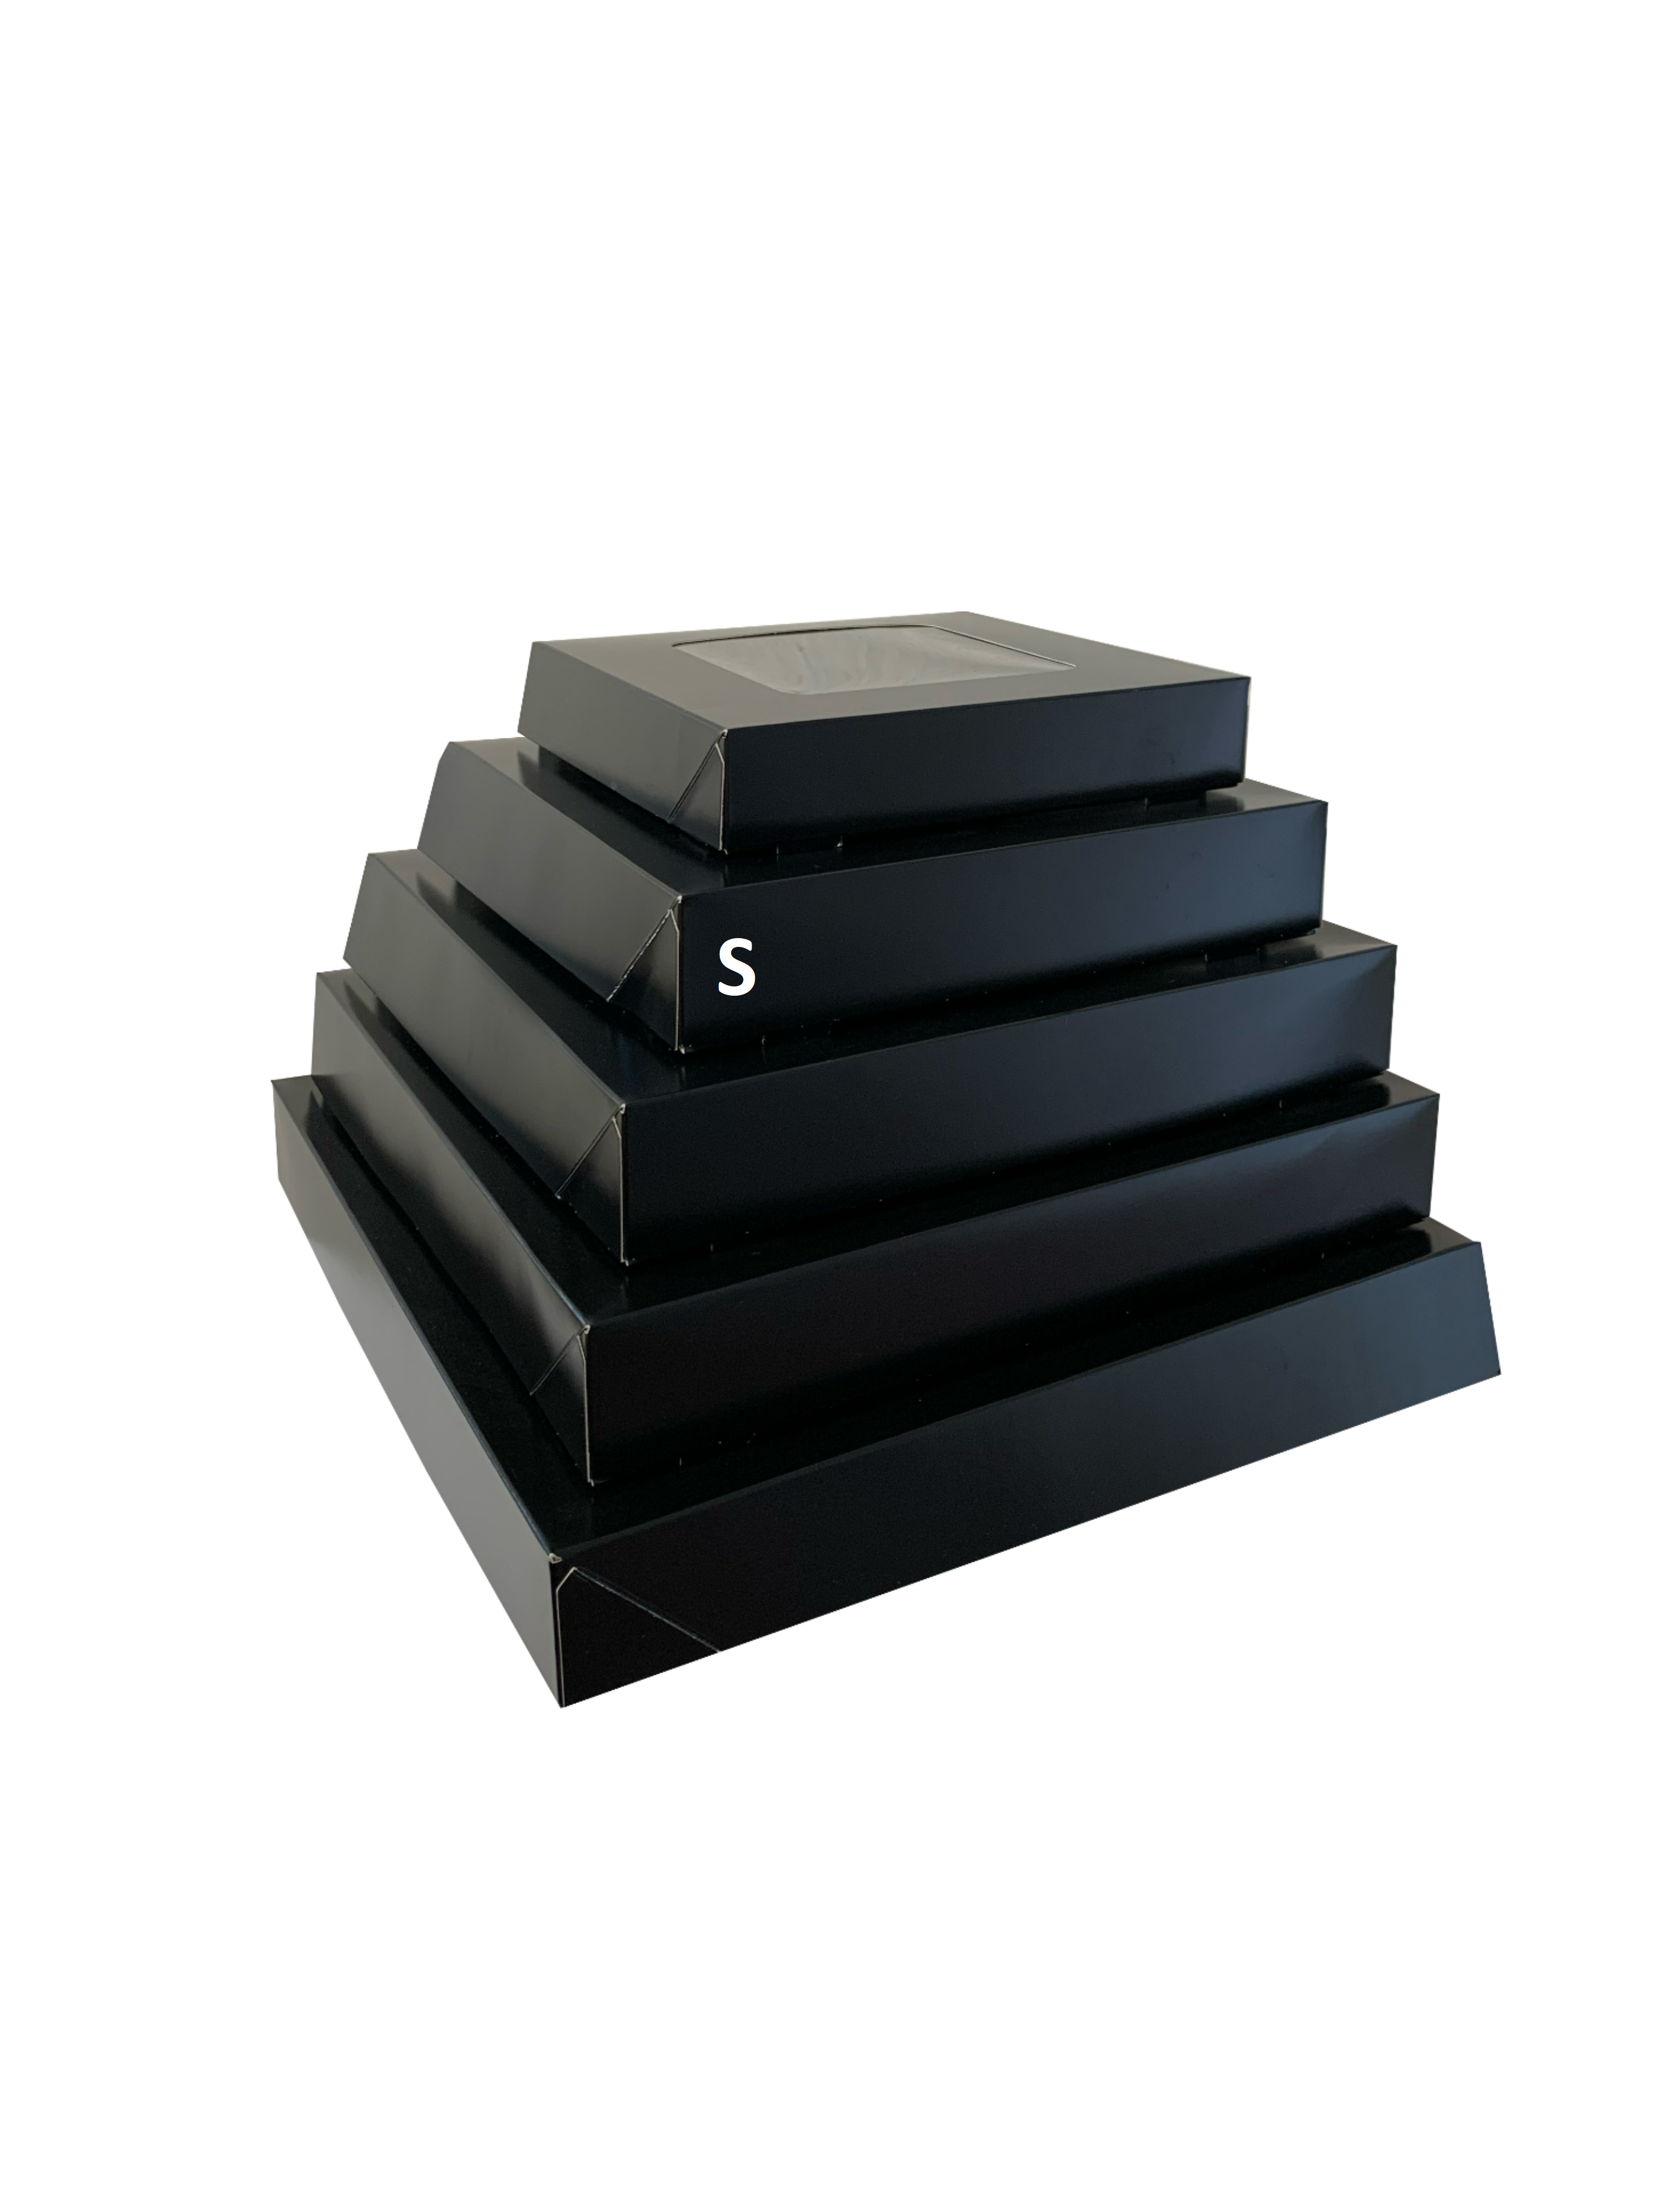 Bio Party-Sushi-Box 10 (S), 270x270x52 mm, "Black Edition", schwarz, mit Sichtfenster & Tray, 100 Stück/Karton